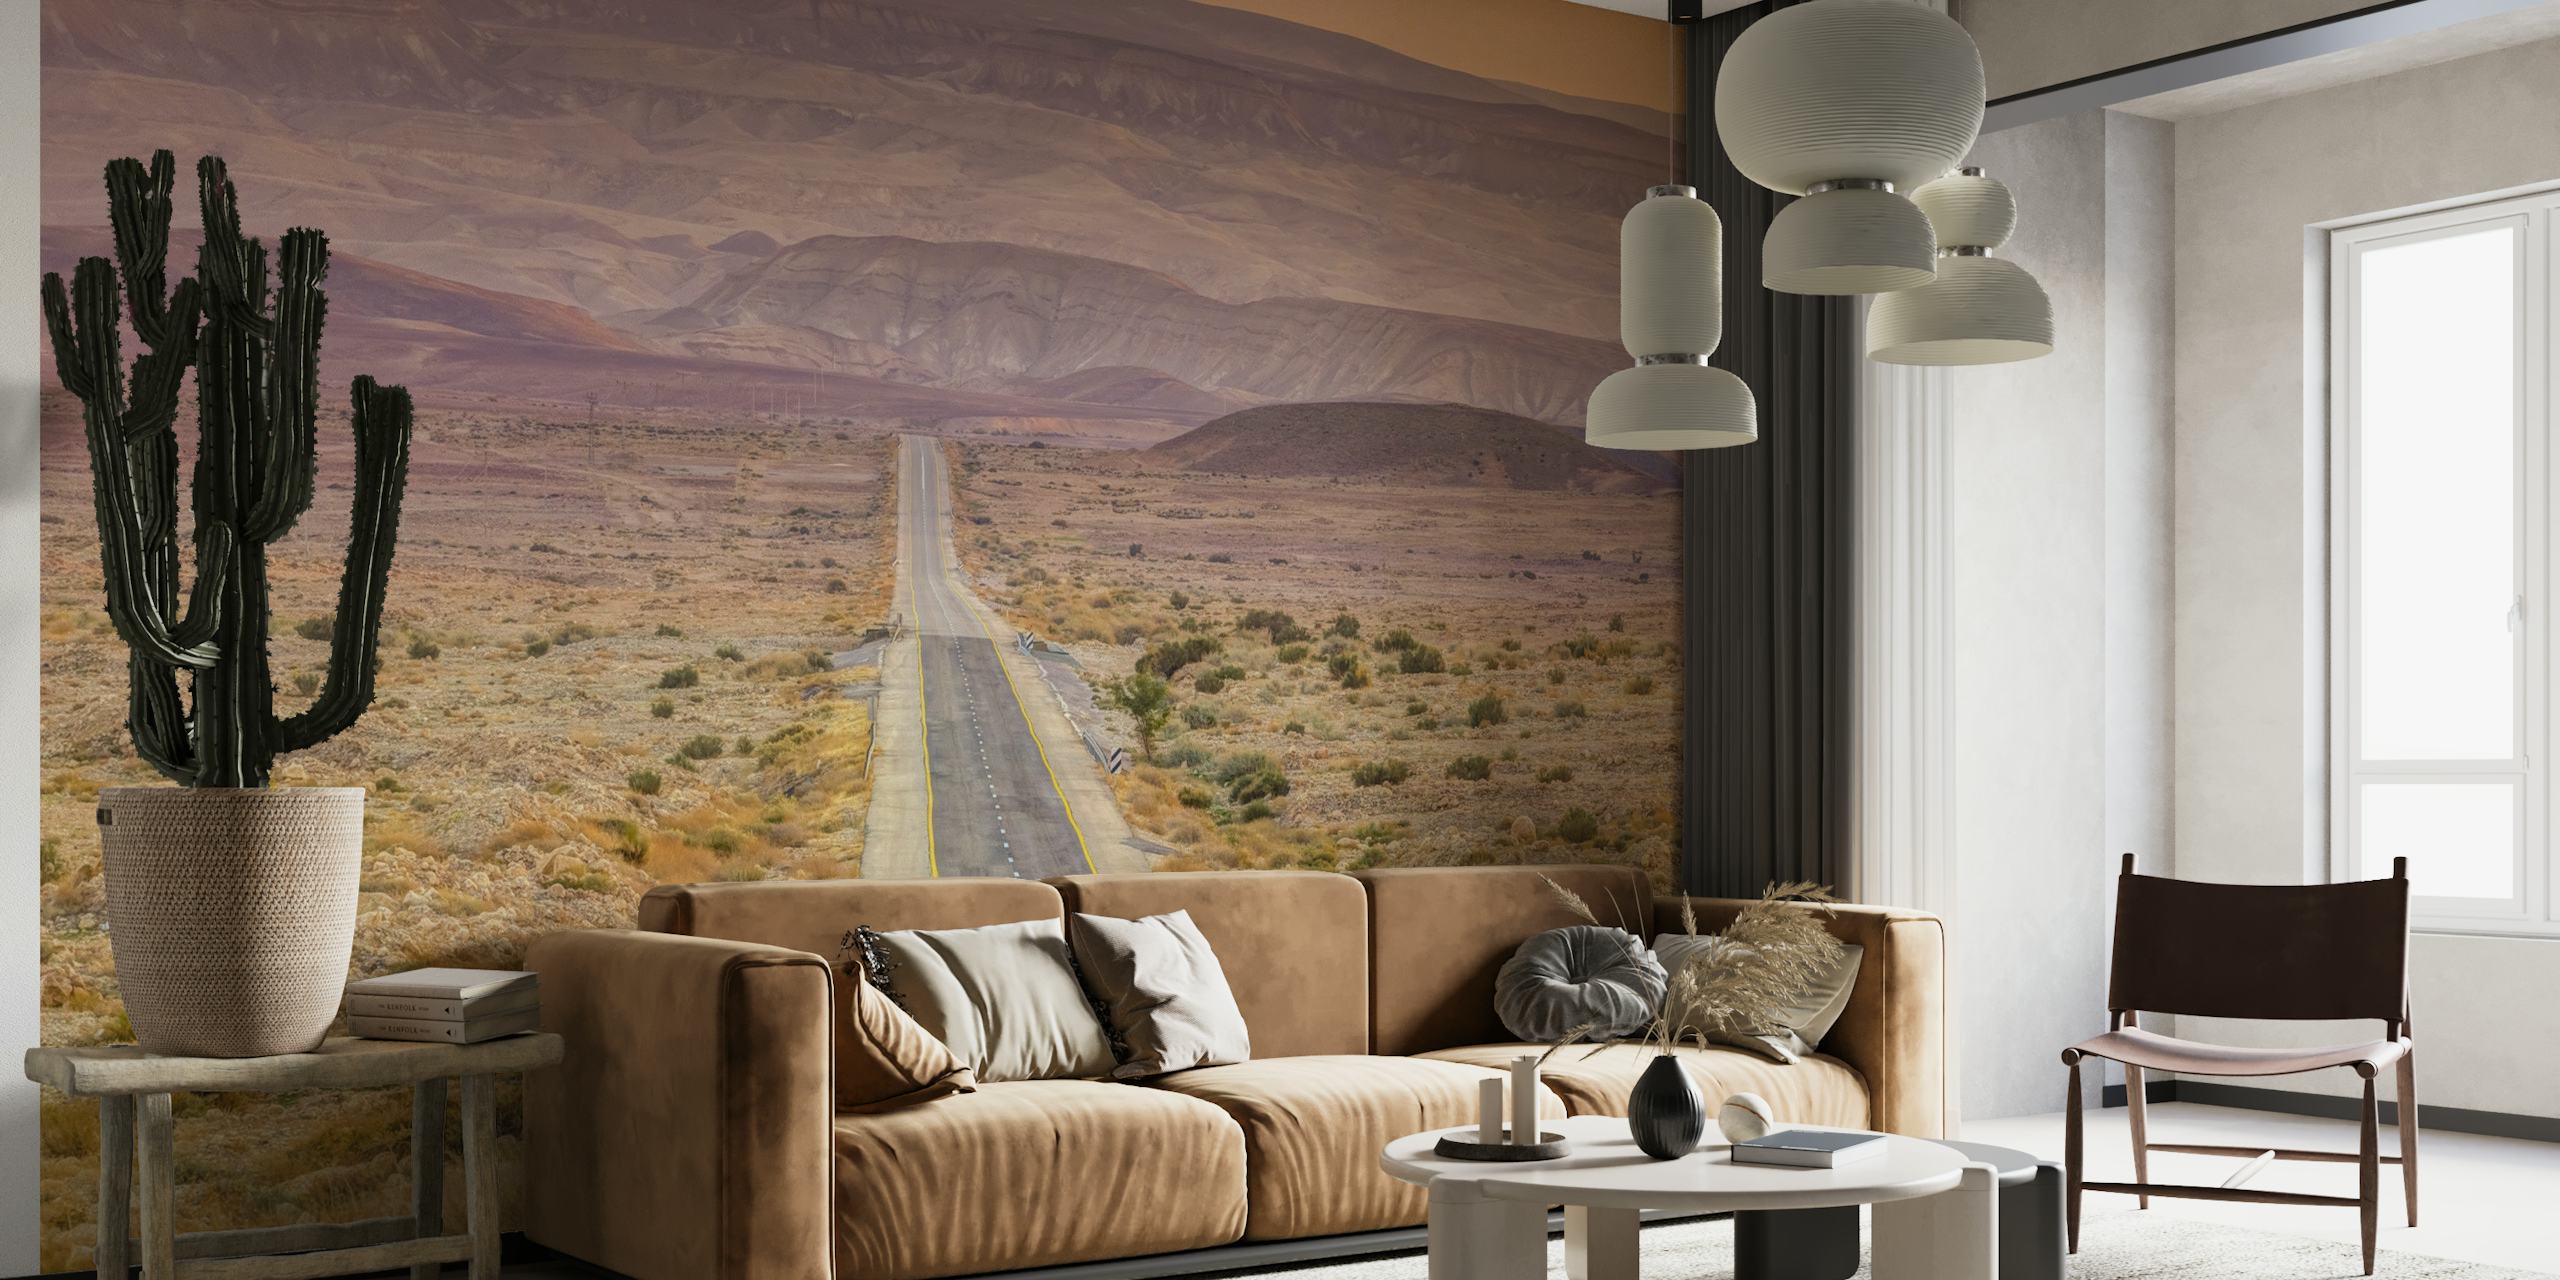 Highway through desert papel pintado